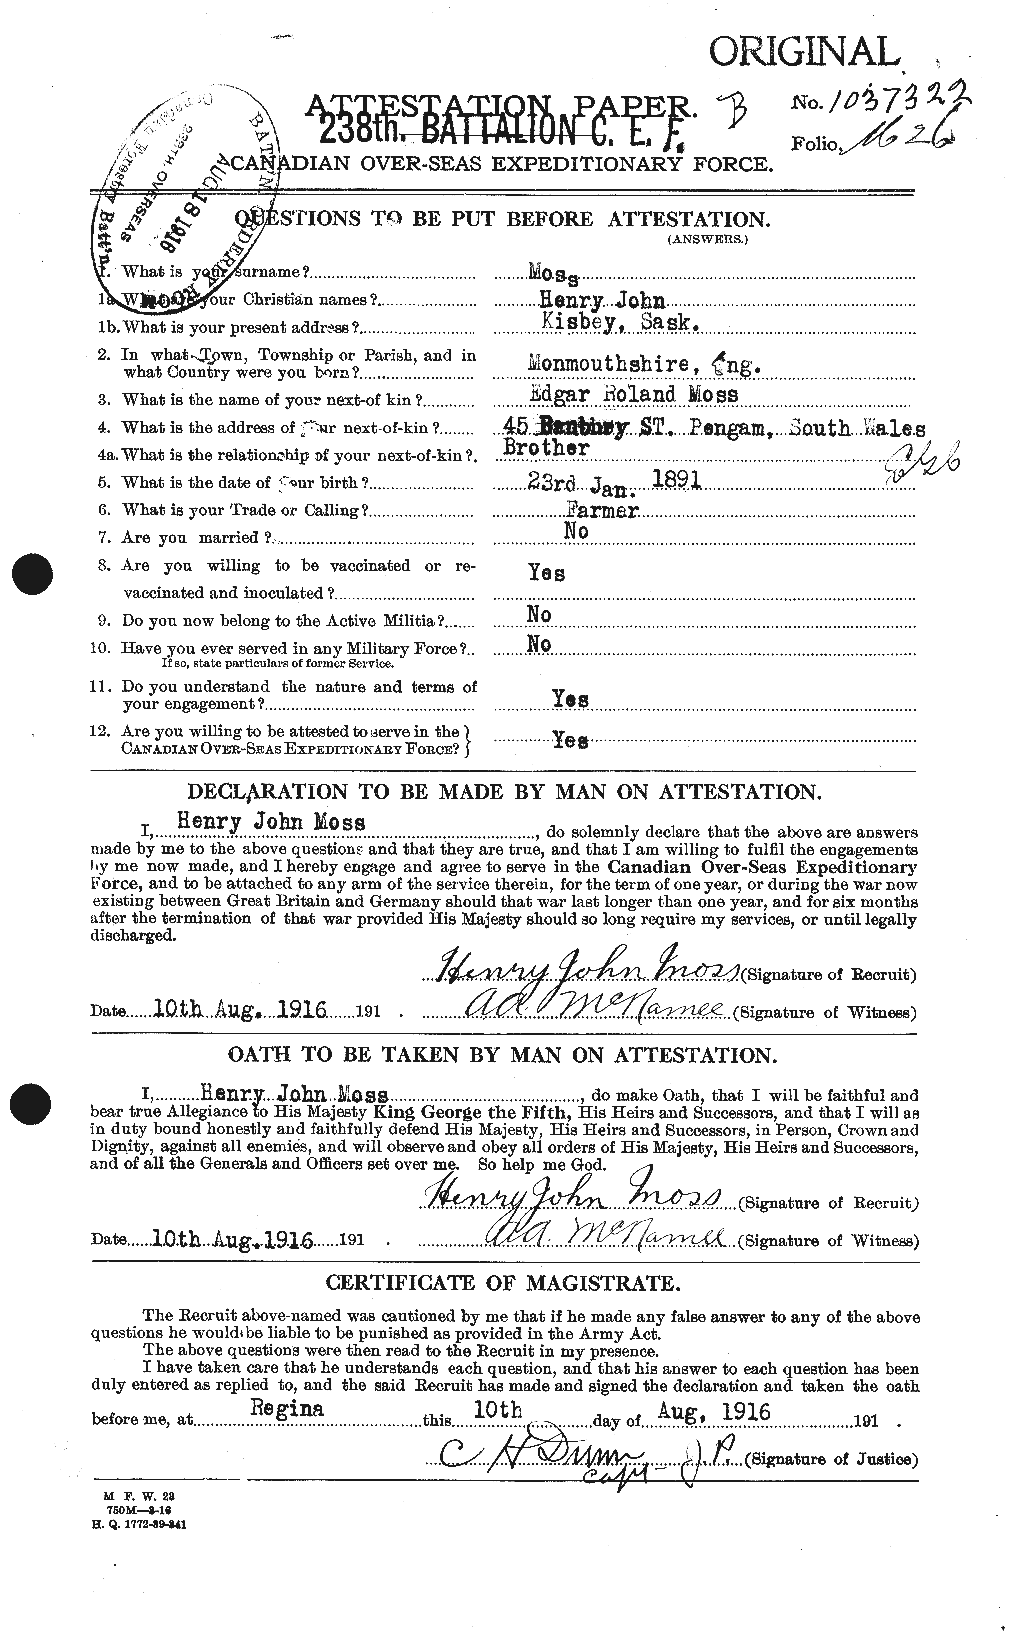 Dossiers du Personnel de la Première Guerre mondiale - CEC 512008a